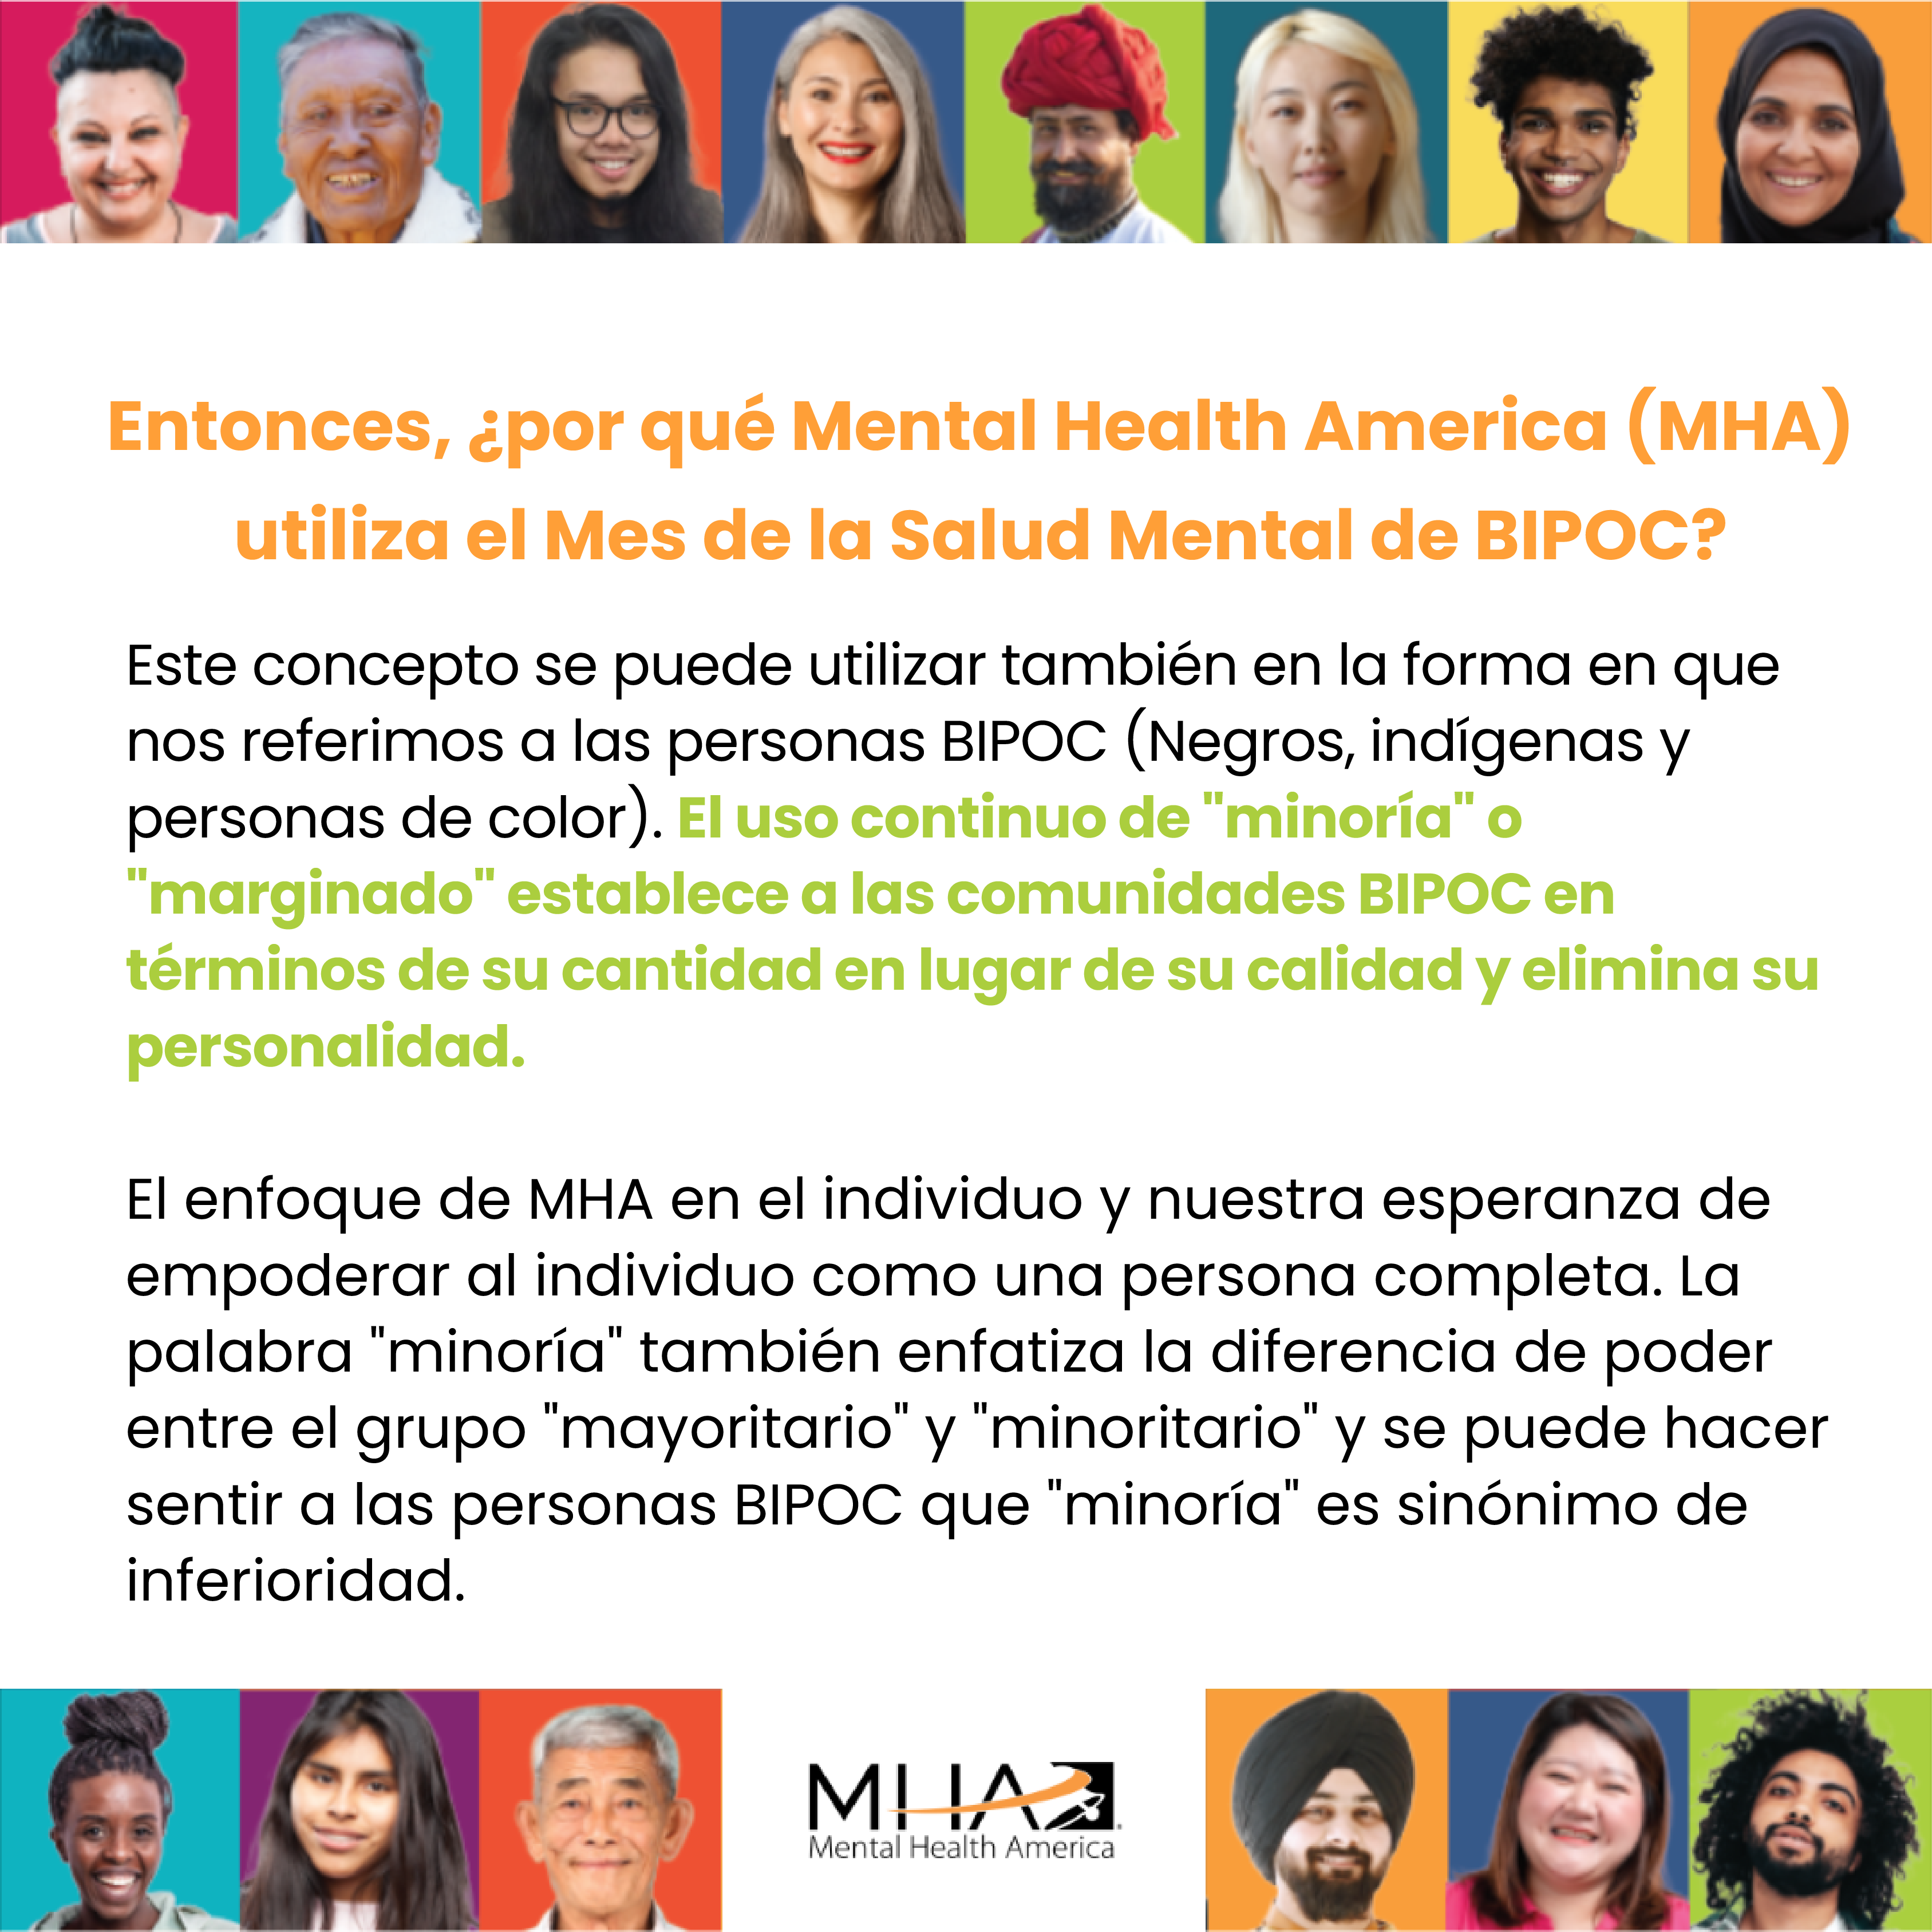 Entonces, ¿por qué Mental Health America (MHA) utiliza el Mes de la Salud Mental de BIPOC?